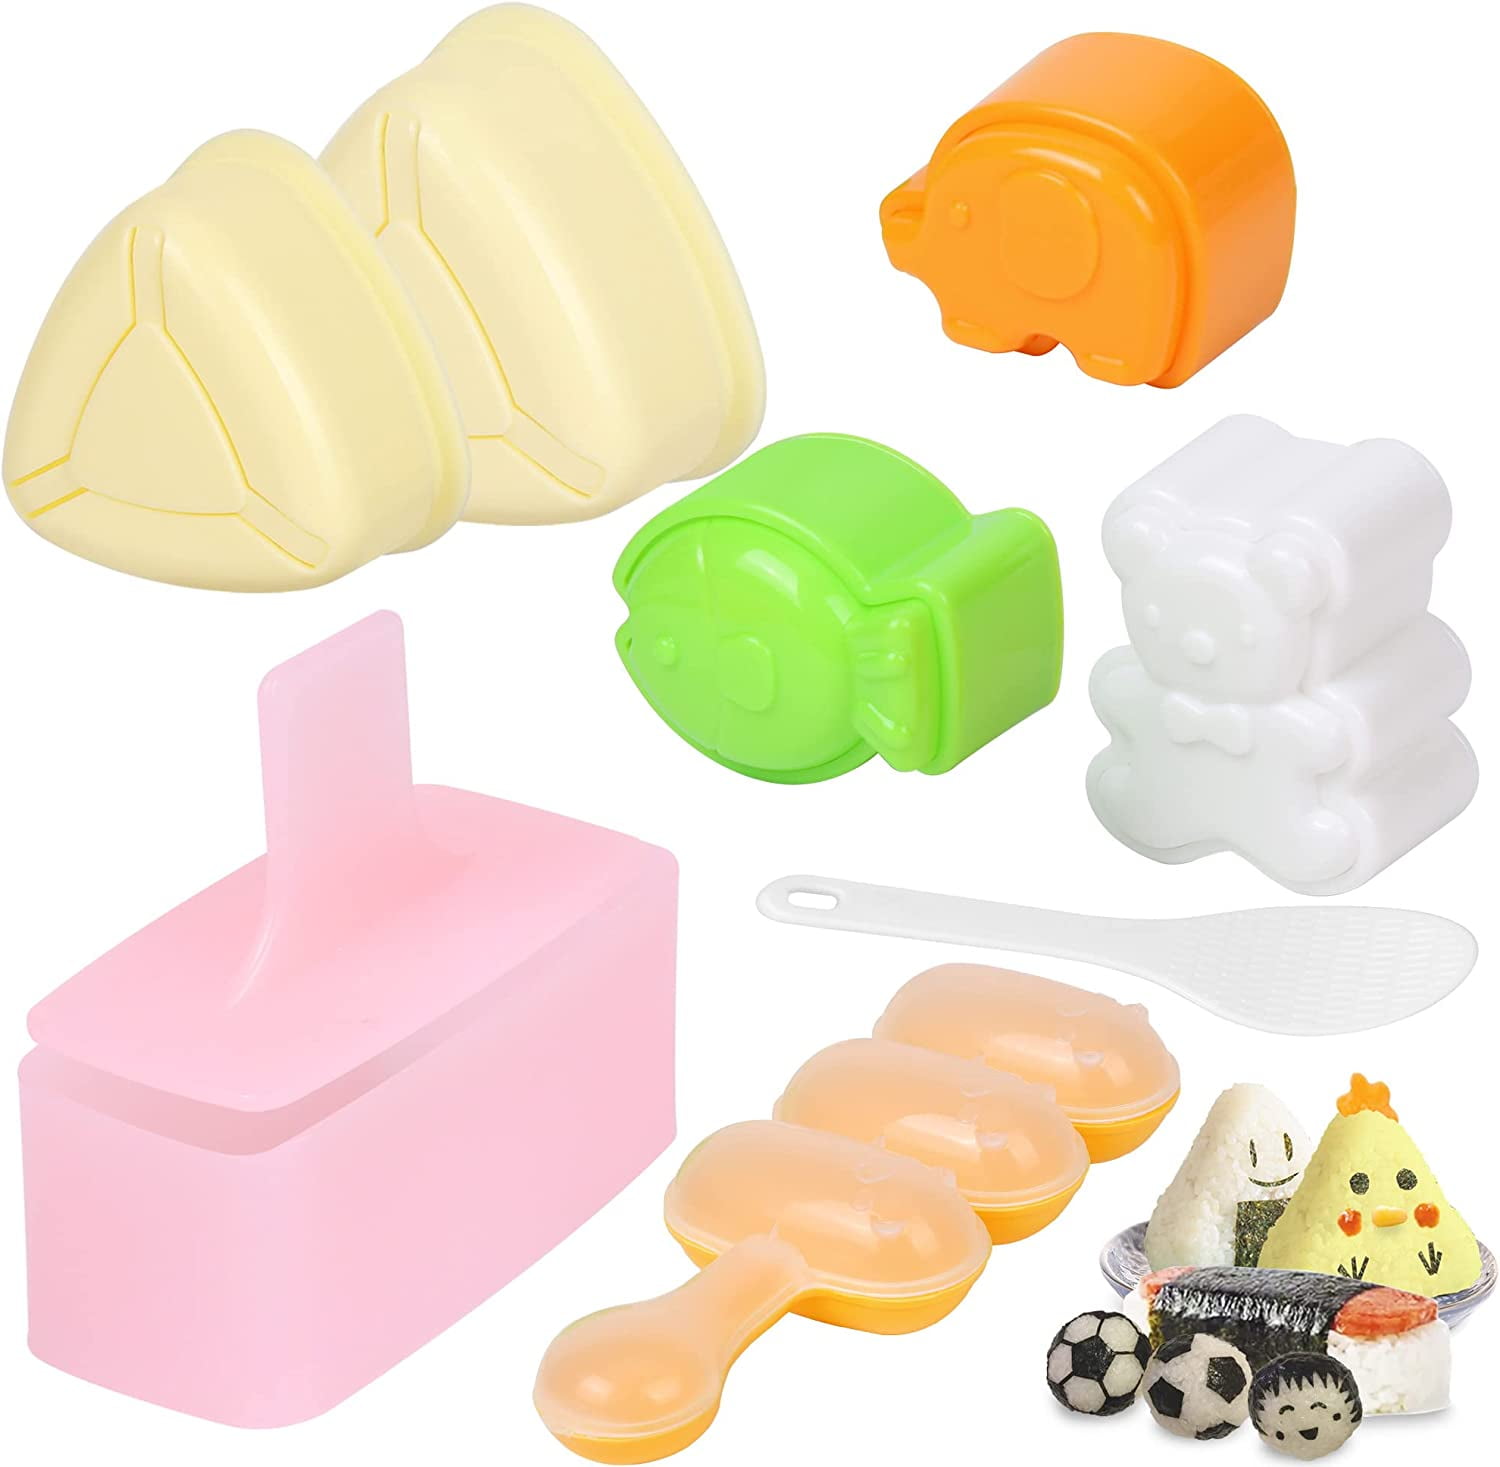 10 Pcs Onigiri Mold Set, Rice Mold Musubi Maker Mold Kit, Non Stick Spam  Musubi Maker Press Rice Ball Mold Shaker Donut Shaper Sushi Maker Tool for